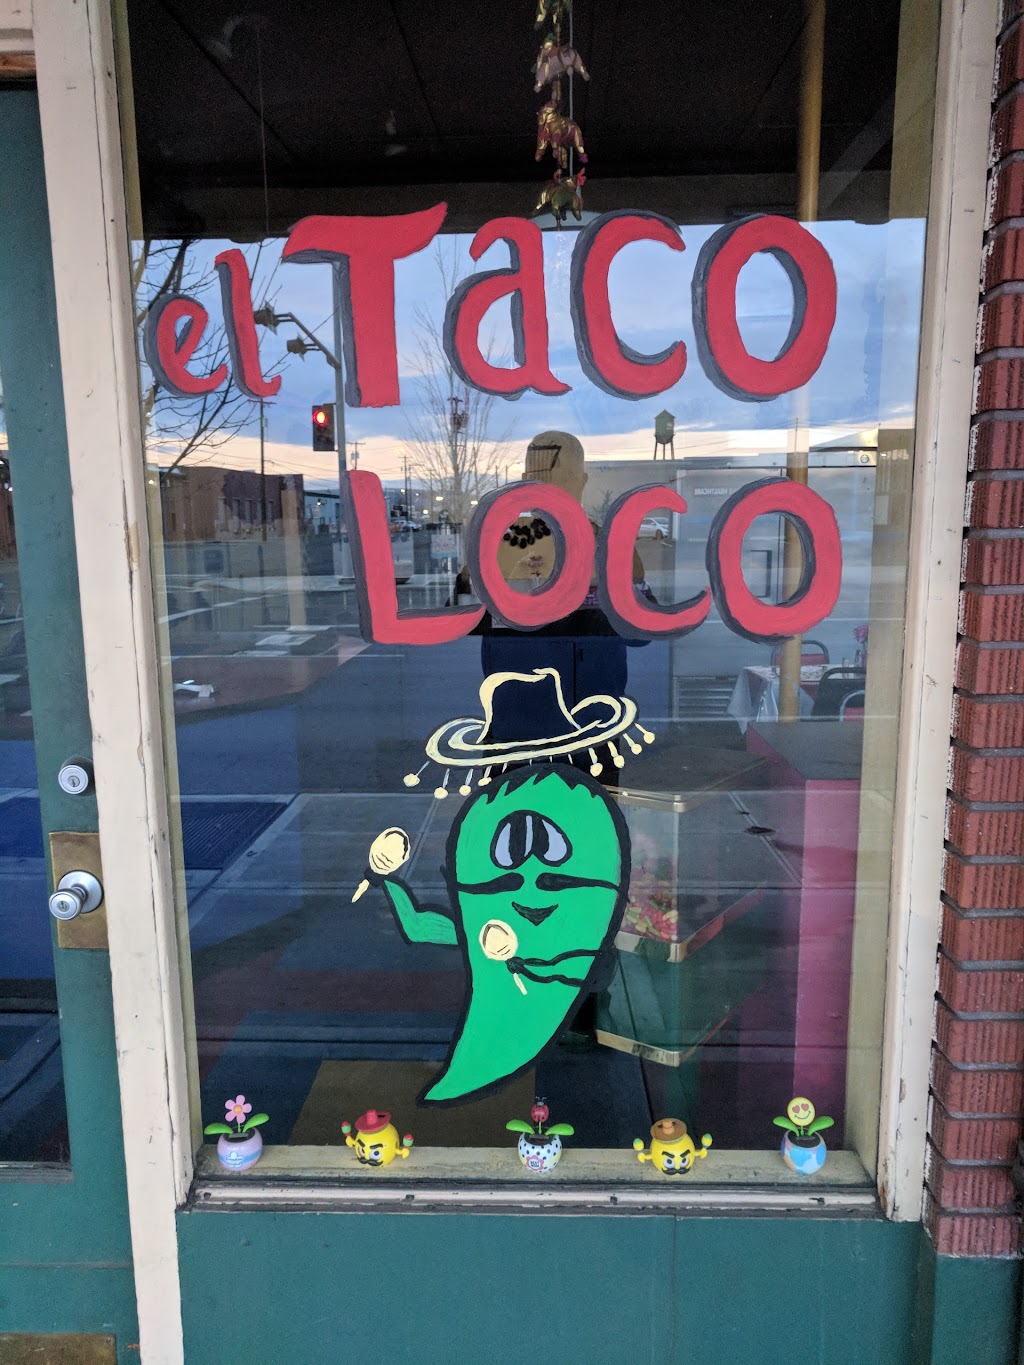 El Taco Loco | restaurant | 19 W Yakima Ave, Yakima, WA 98902, USA | 5094532161 OR +1 509-453-2161